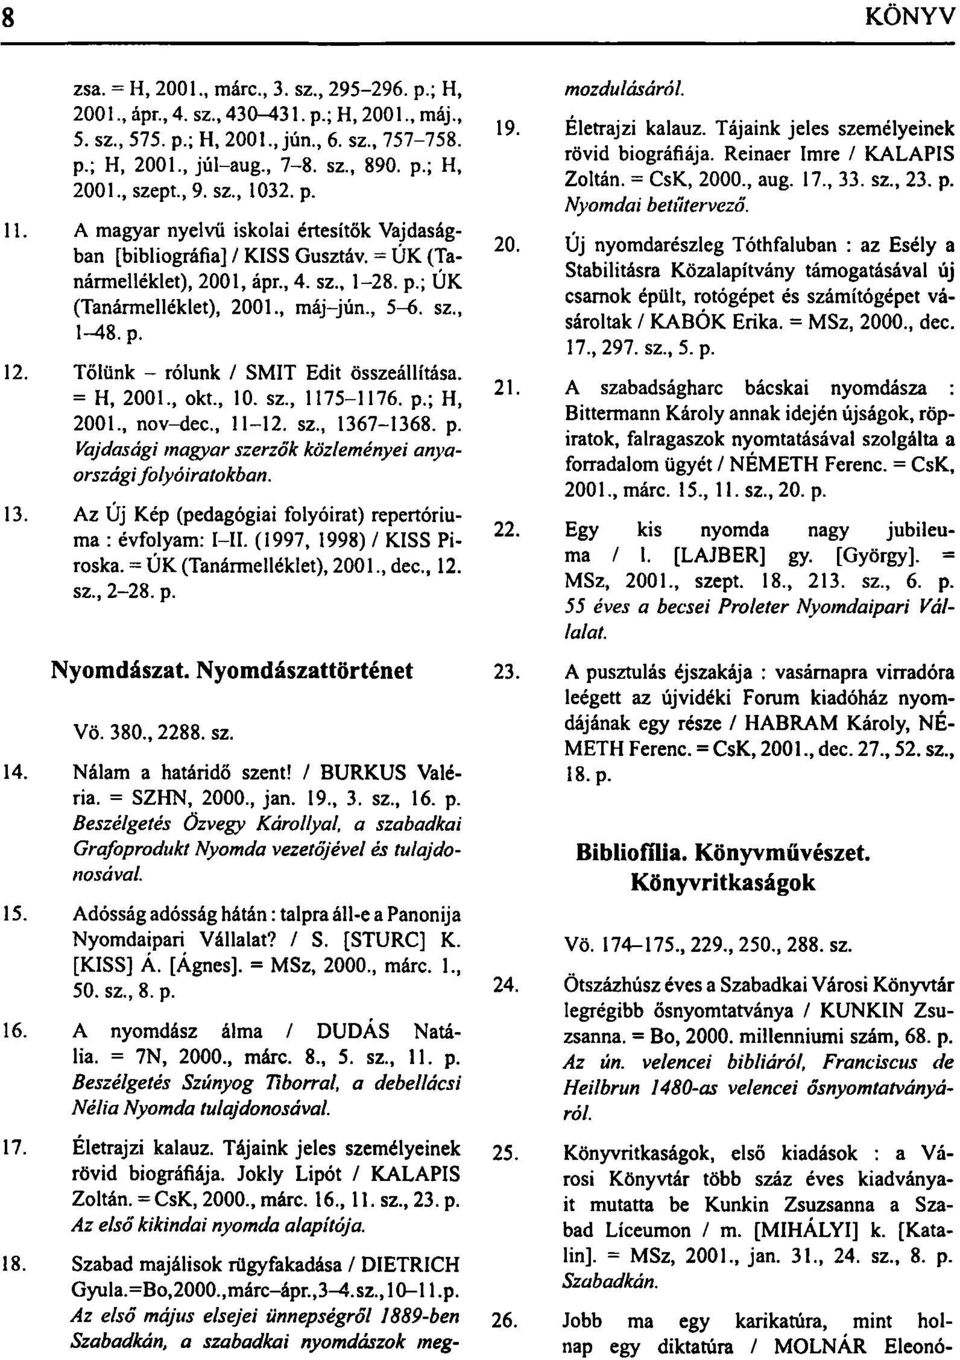 p. 12. Tőlünk - rólunk / SMIT Edit összeállítása. = H, 2001., okt., 10. sz., 1175-1176. p.; H, 2001., nov-dec., 11-12. sz., 1367-1368. p. Vajdasági magyar szerzők közleményei anyaországifolyóiratokban.